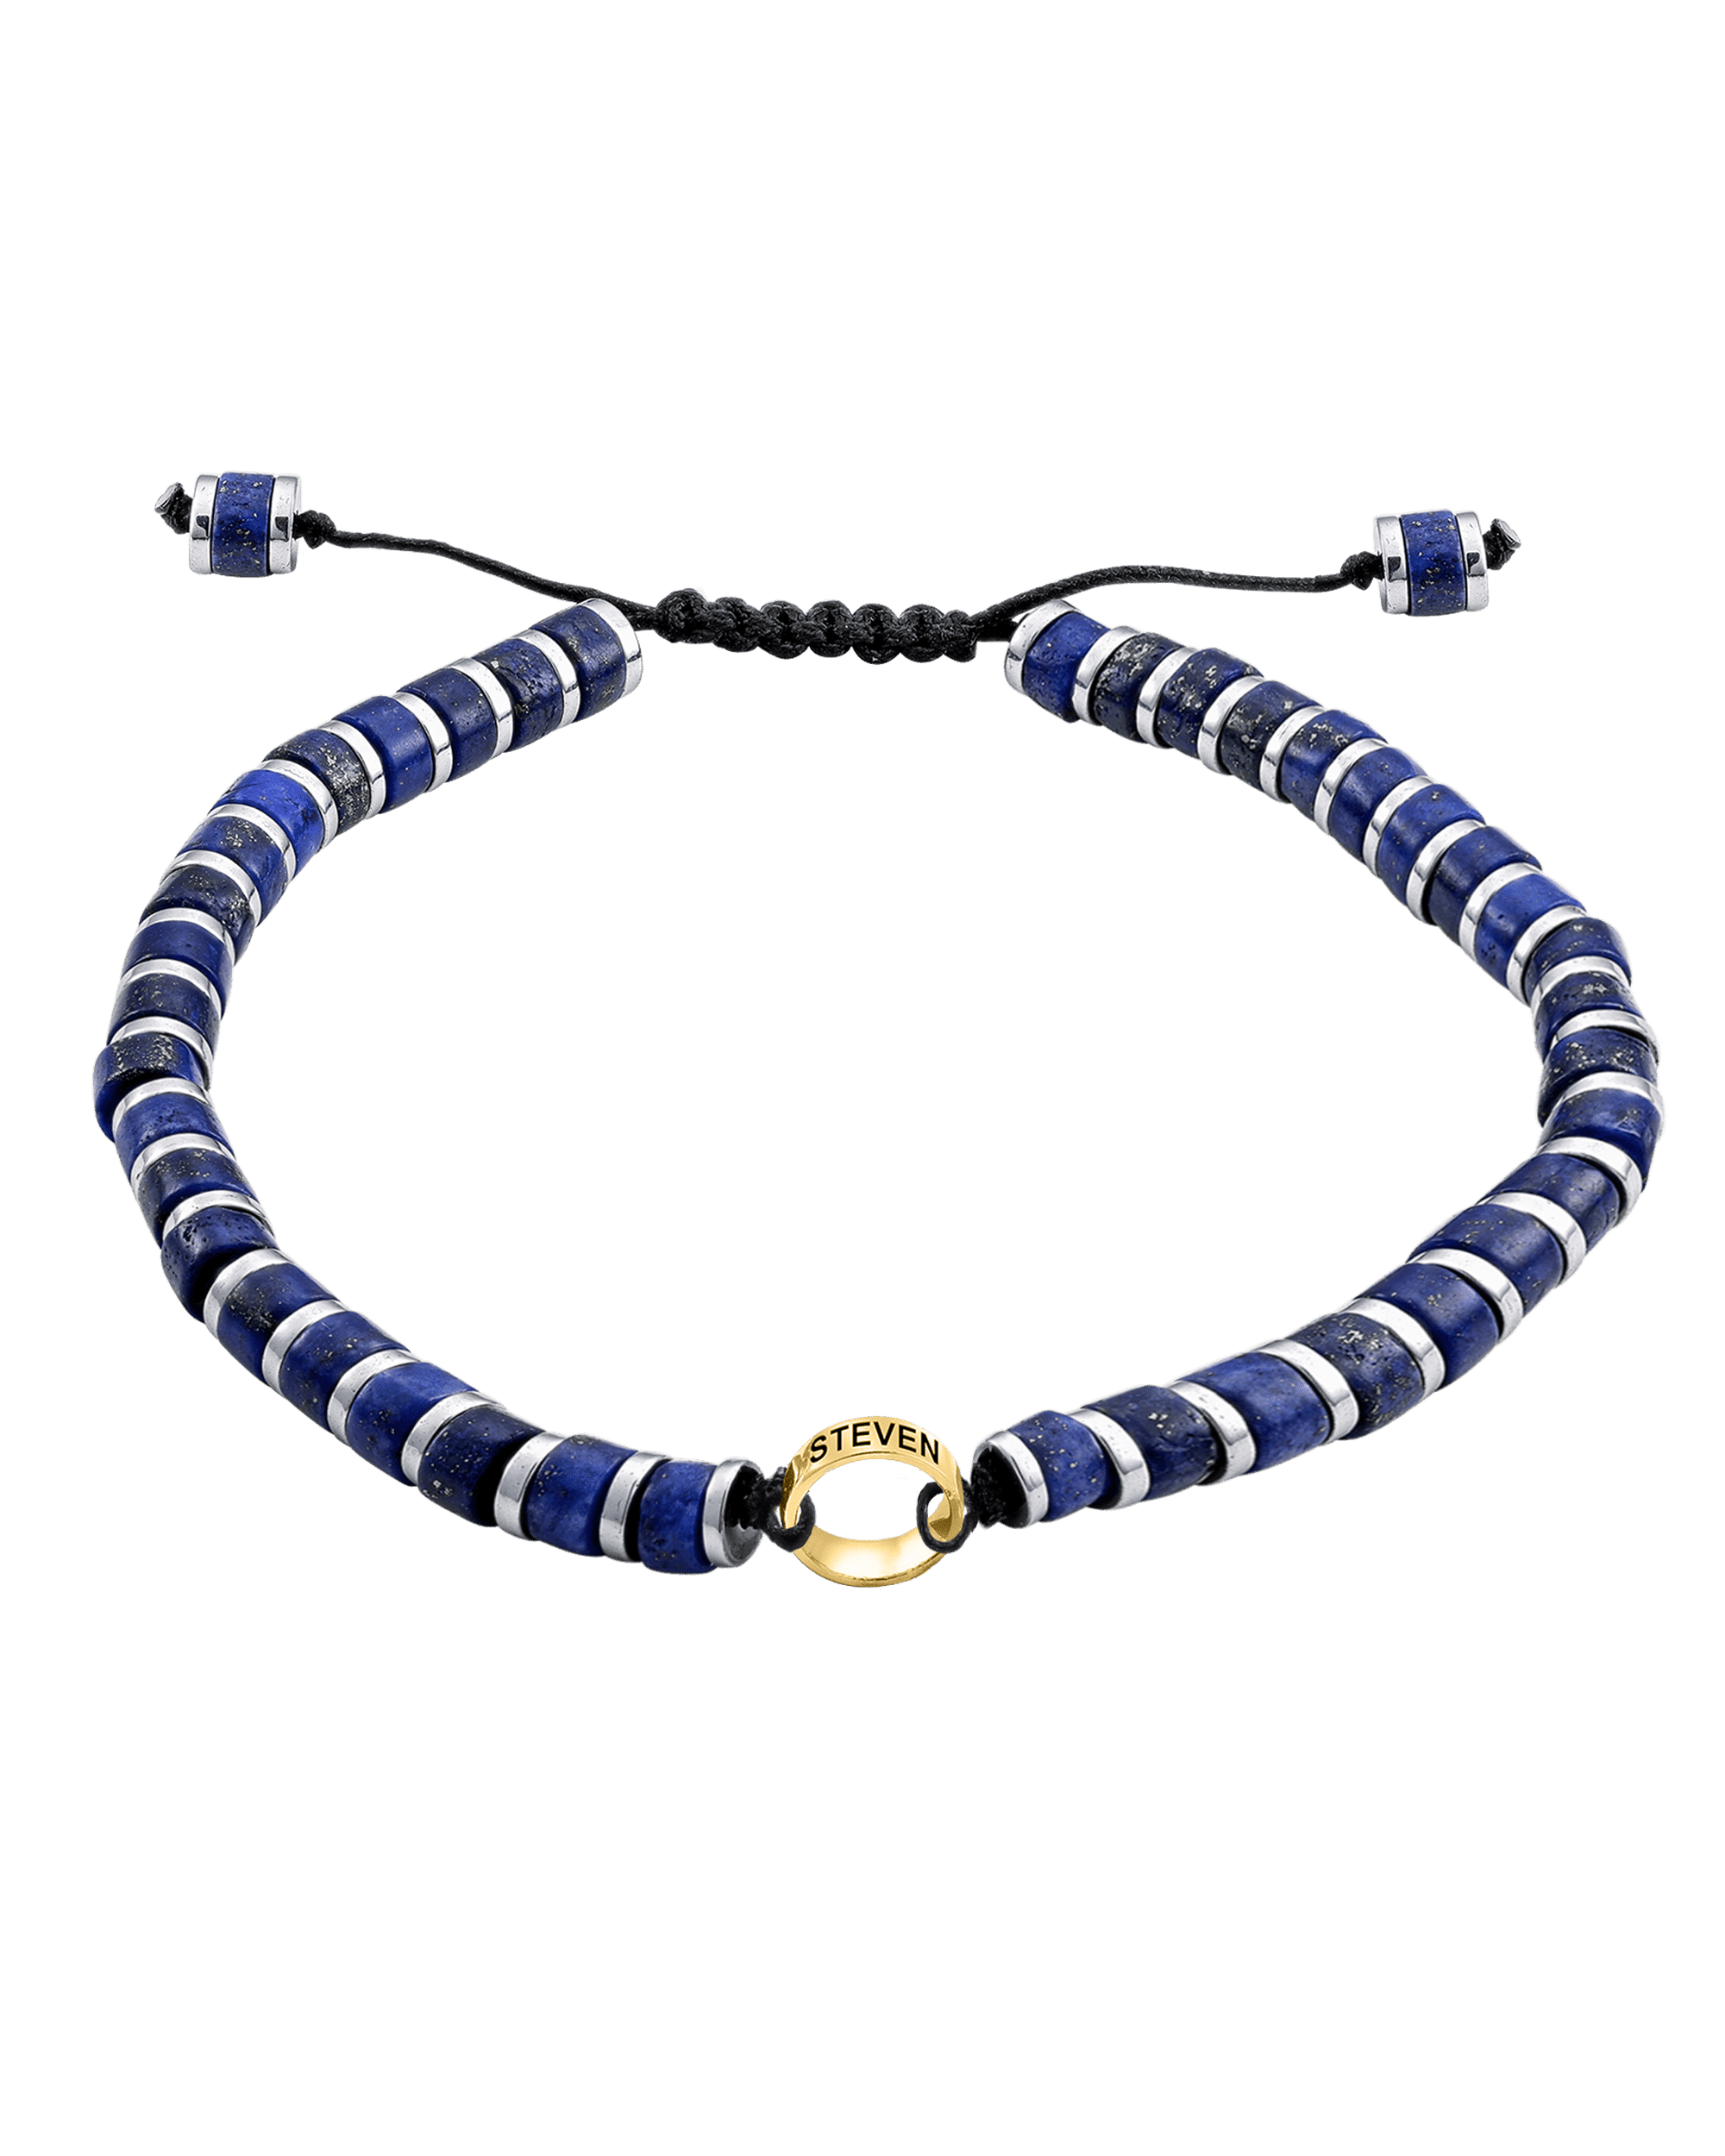 Bracelet de Perles de Lapis-Lazuli Bleu & Bagues Peronnalisables - Or Jaune 14 carats Bracelets magal-dev 1 Lien 